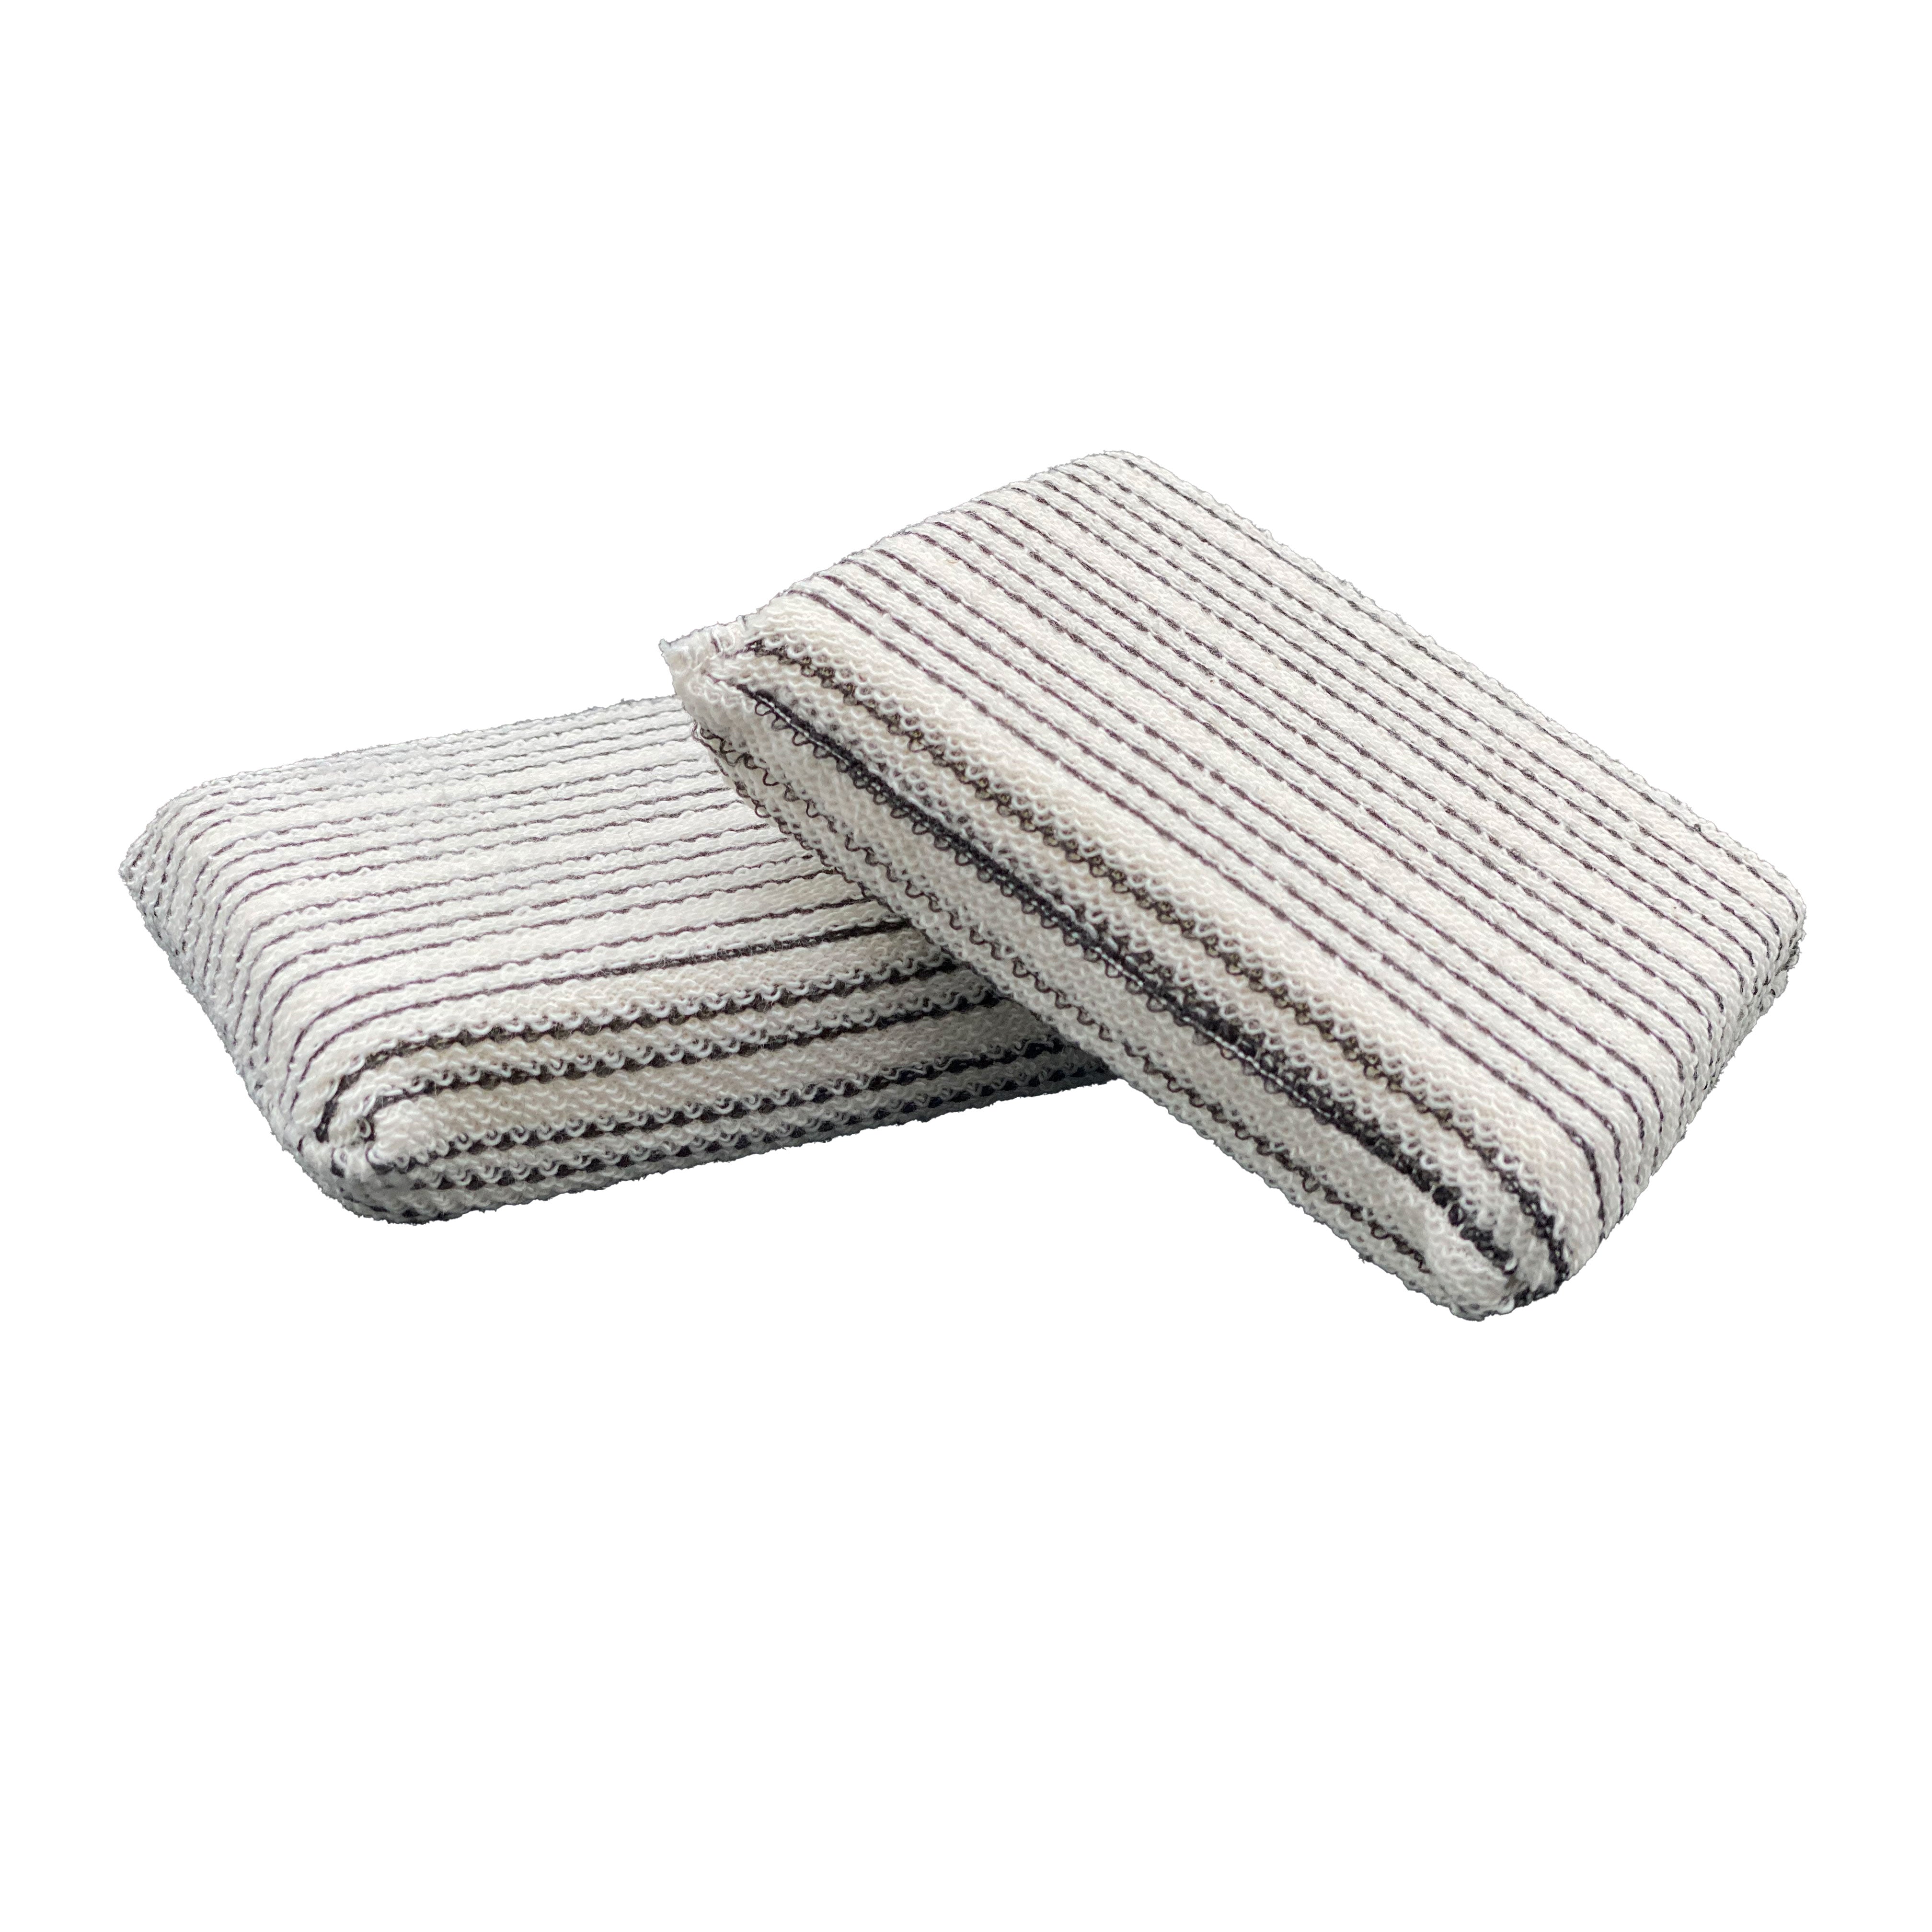 3" x 5" Striped Small Terry Knit Multi Purpose Applicator